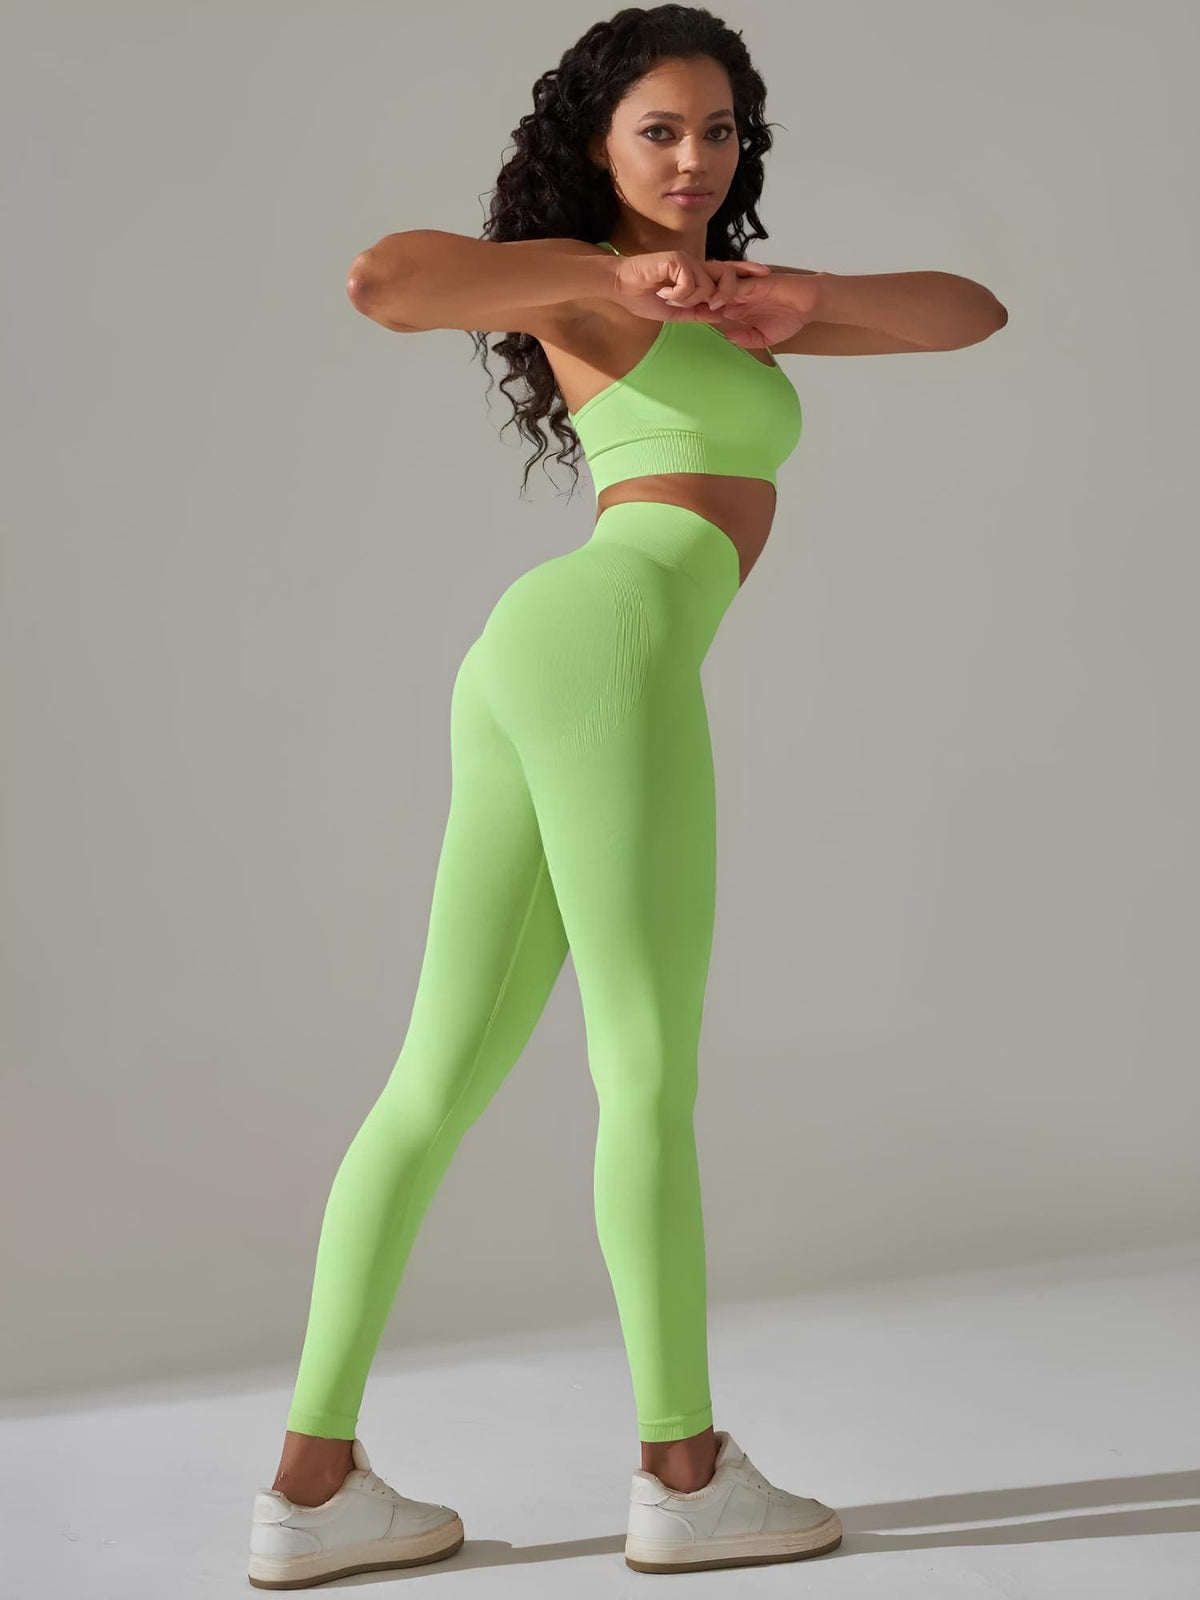 Legging Fitness Feminina Verde Claro Empina Bumbum Rise